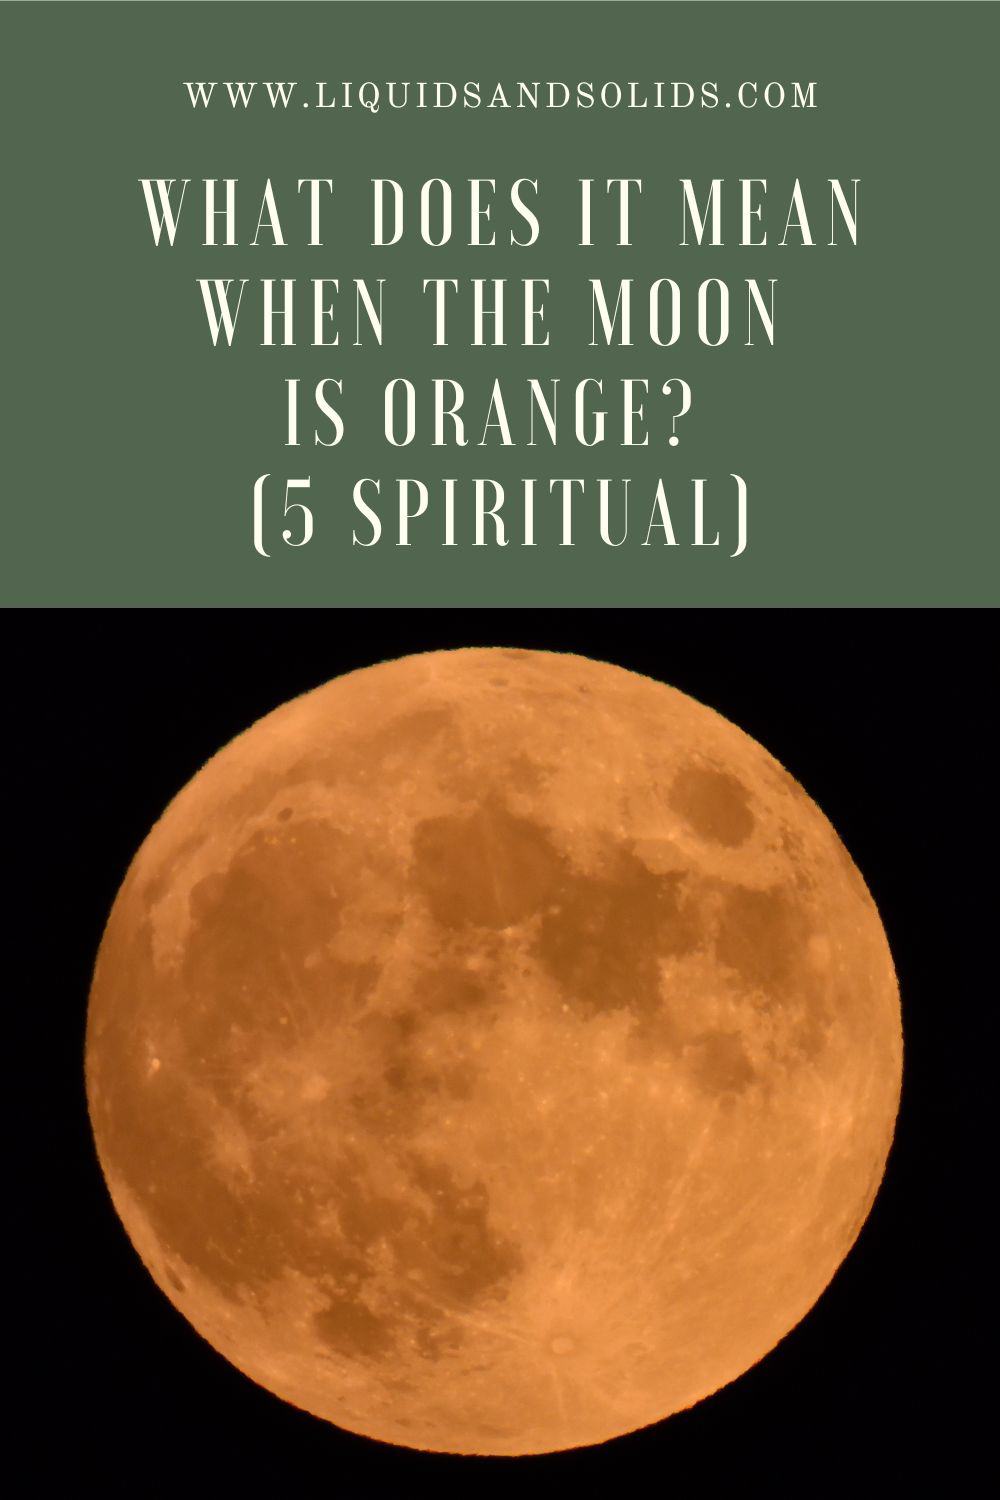  Mida tähendab see, kui kuu on oranž? (5 vaimset tähendust)